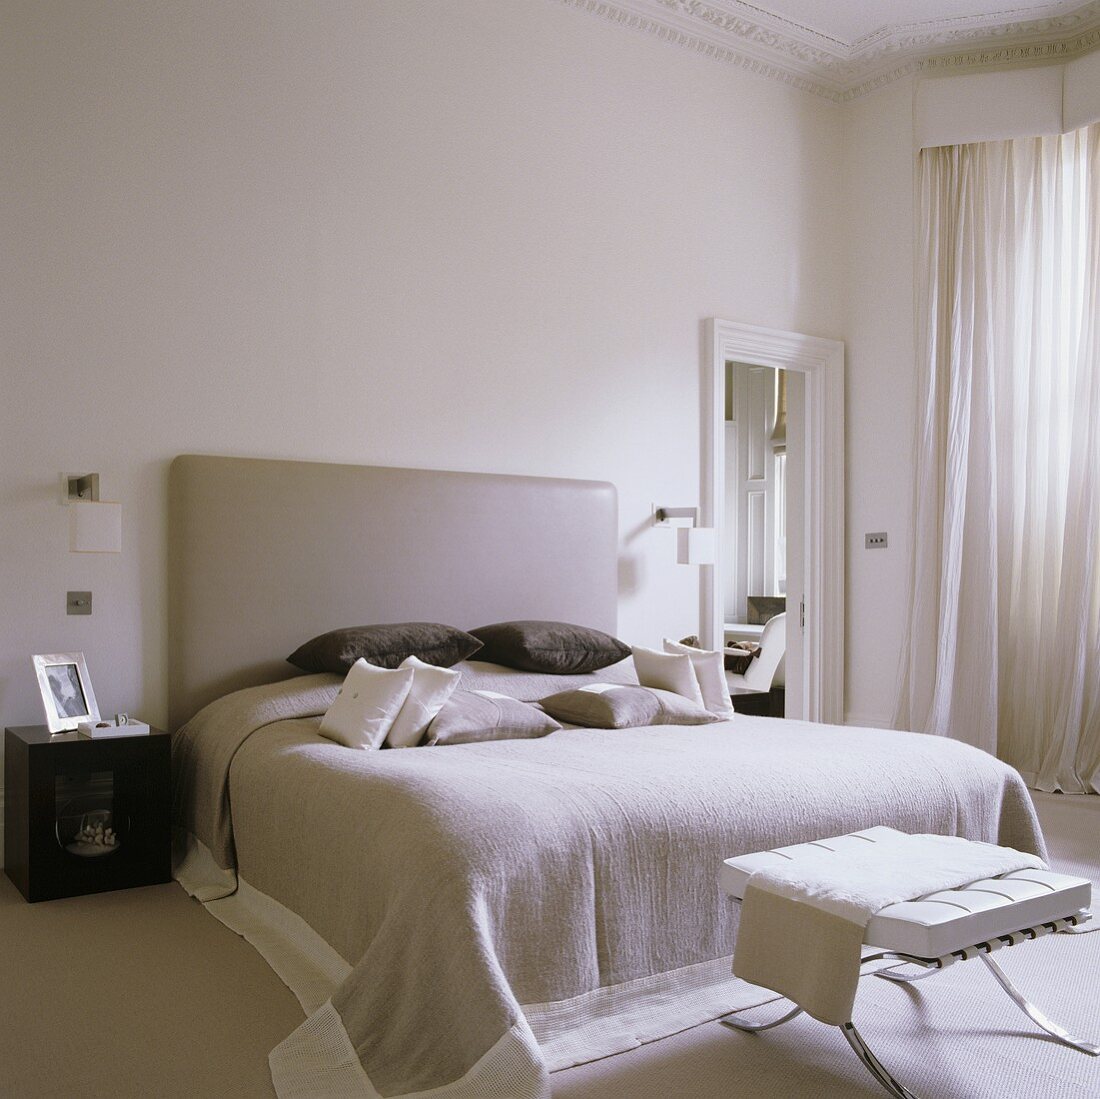 Weisser Schlafraum mit Doppelbett und gepolstertem Kopfteil in Leder und Hocker am Bettende im Bauhausstil